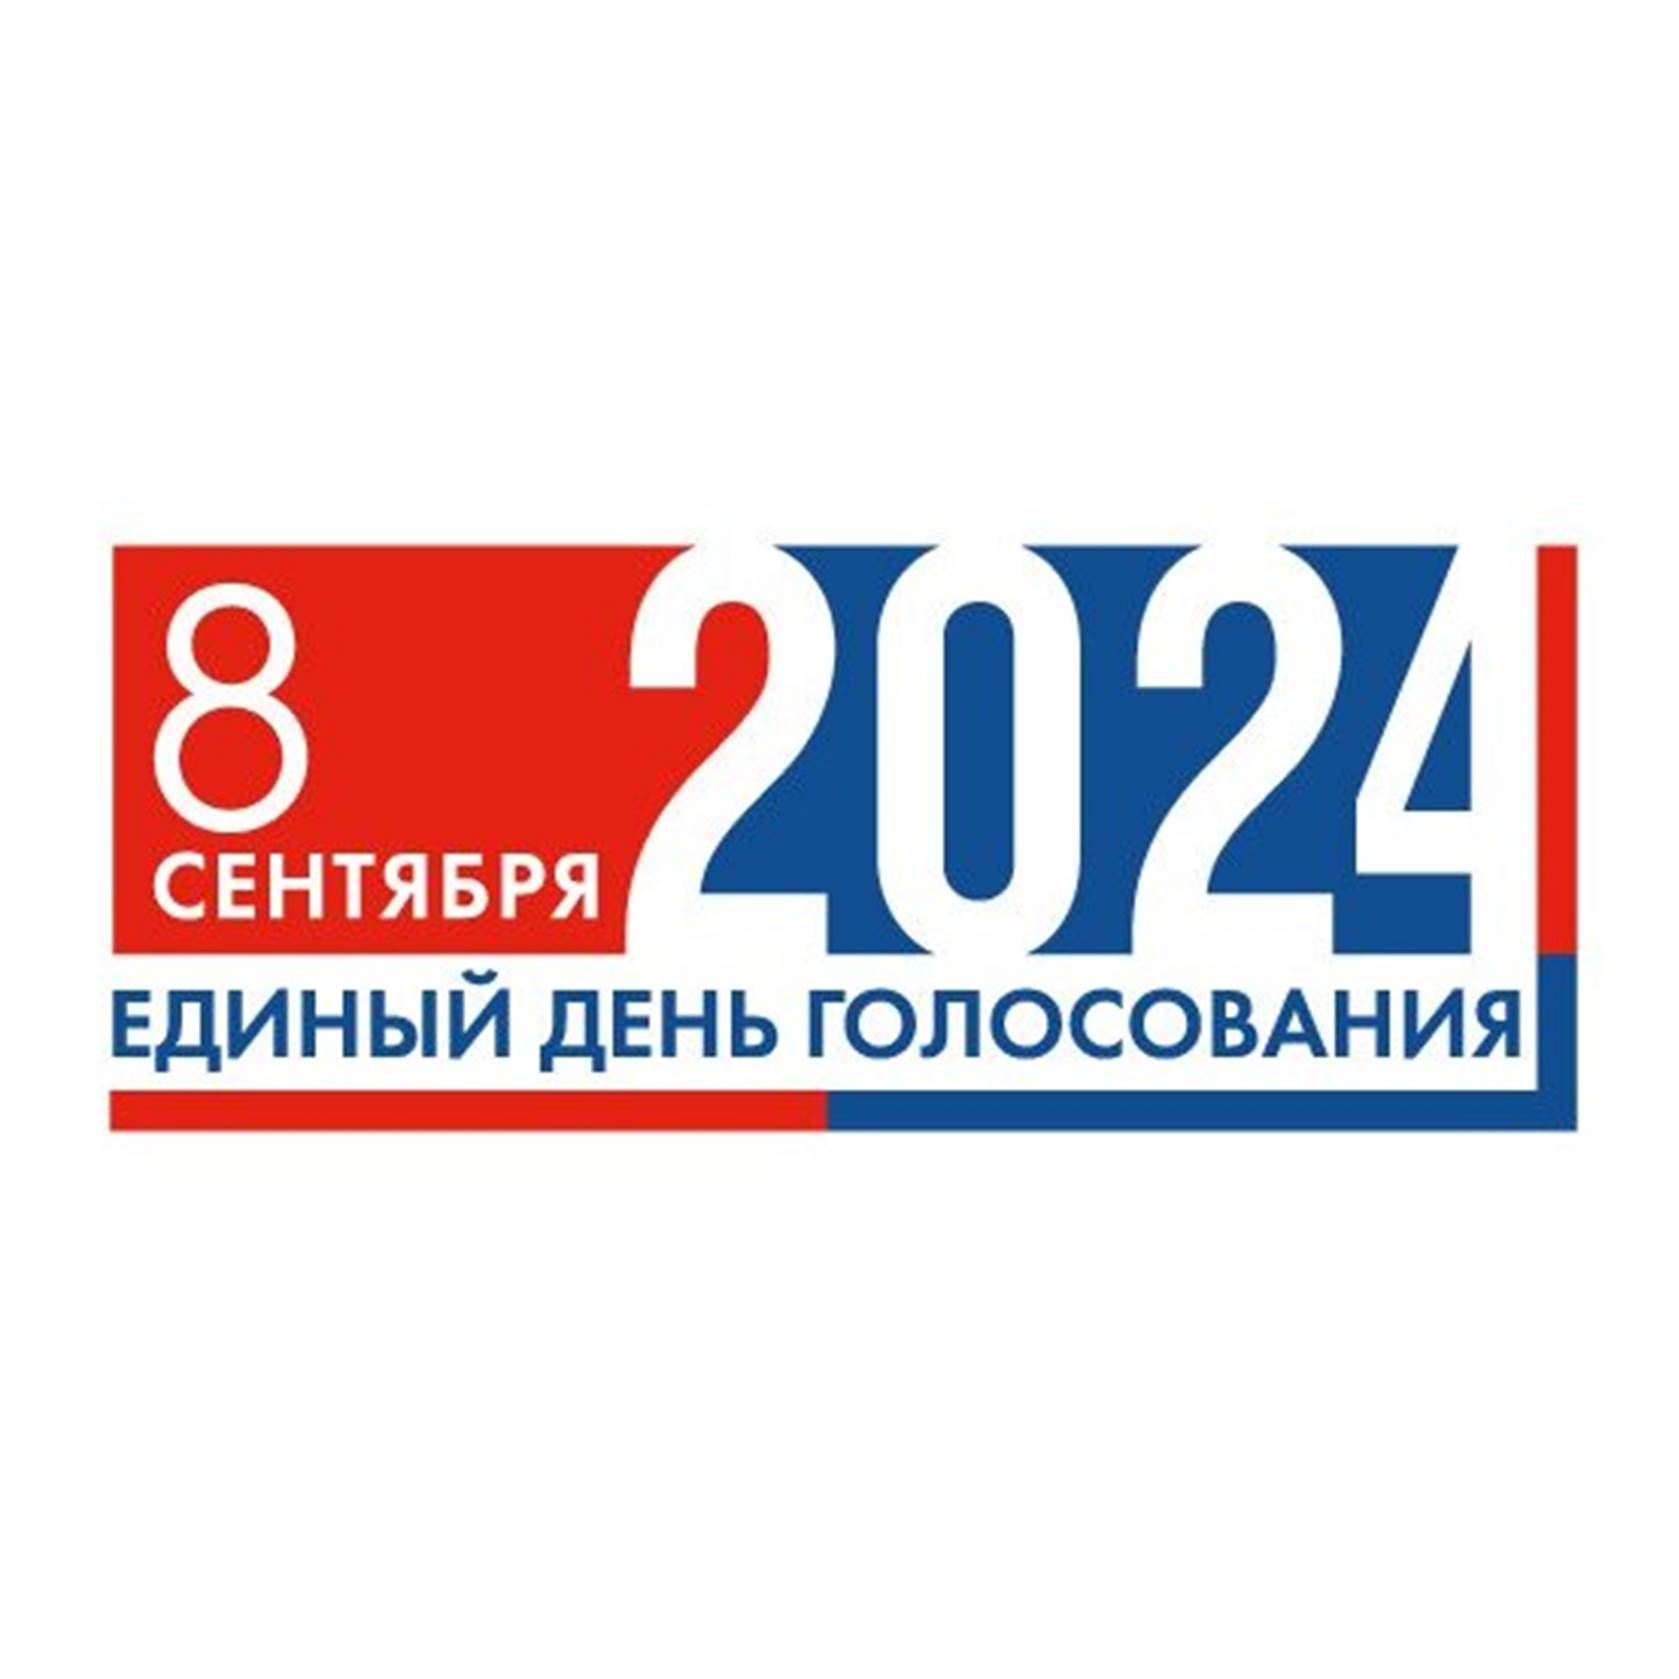 Логотип Единого дня голосования 8 сентября 2024 года